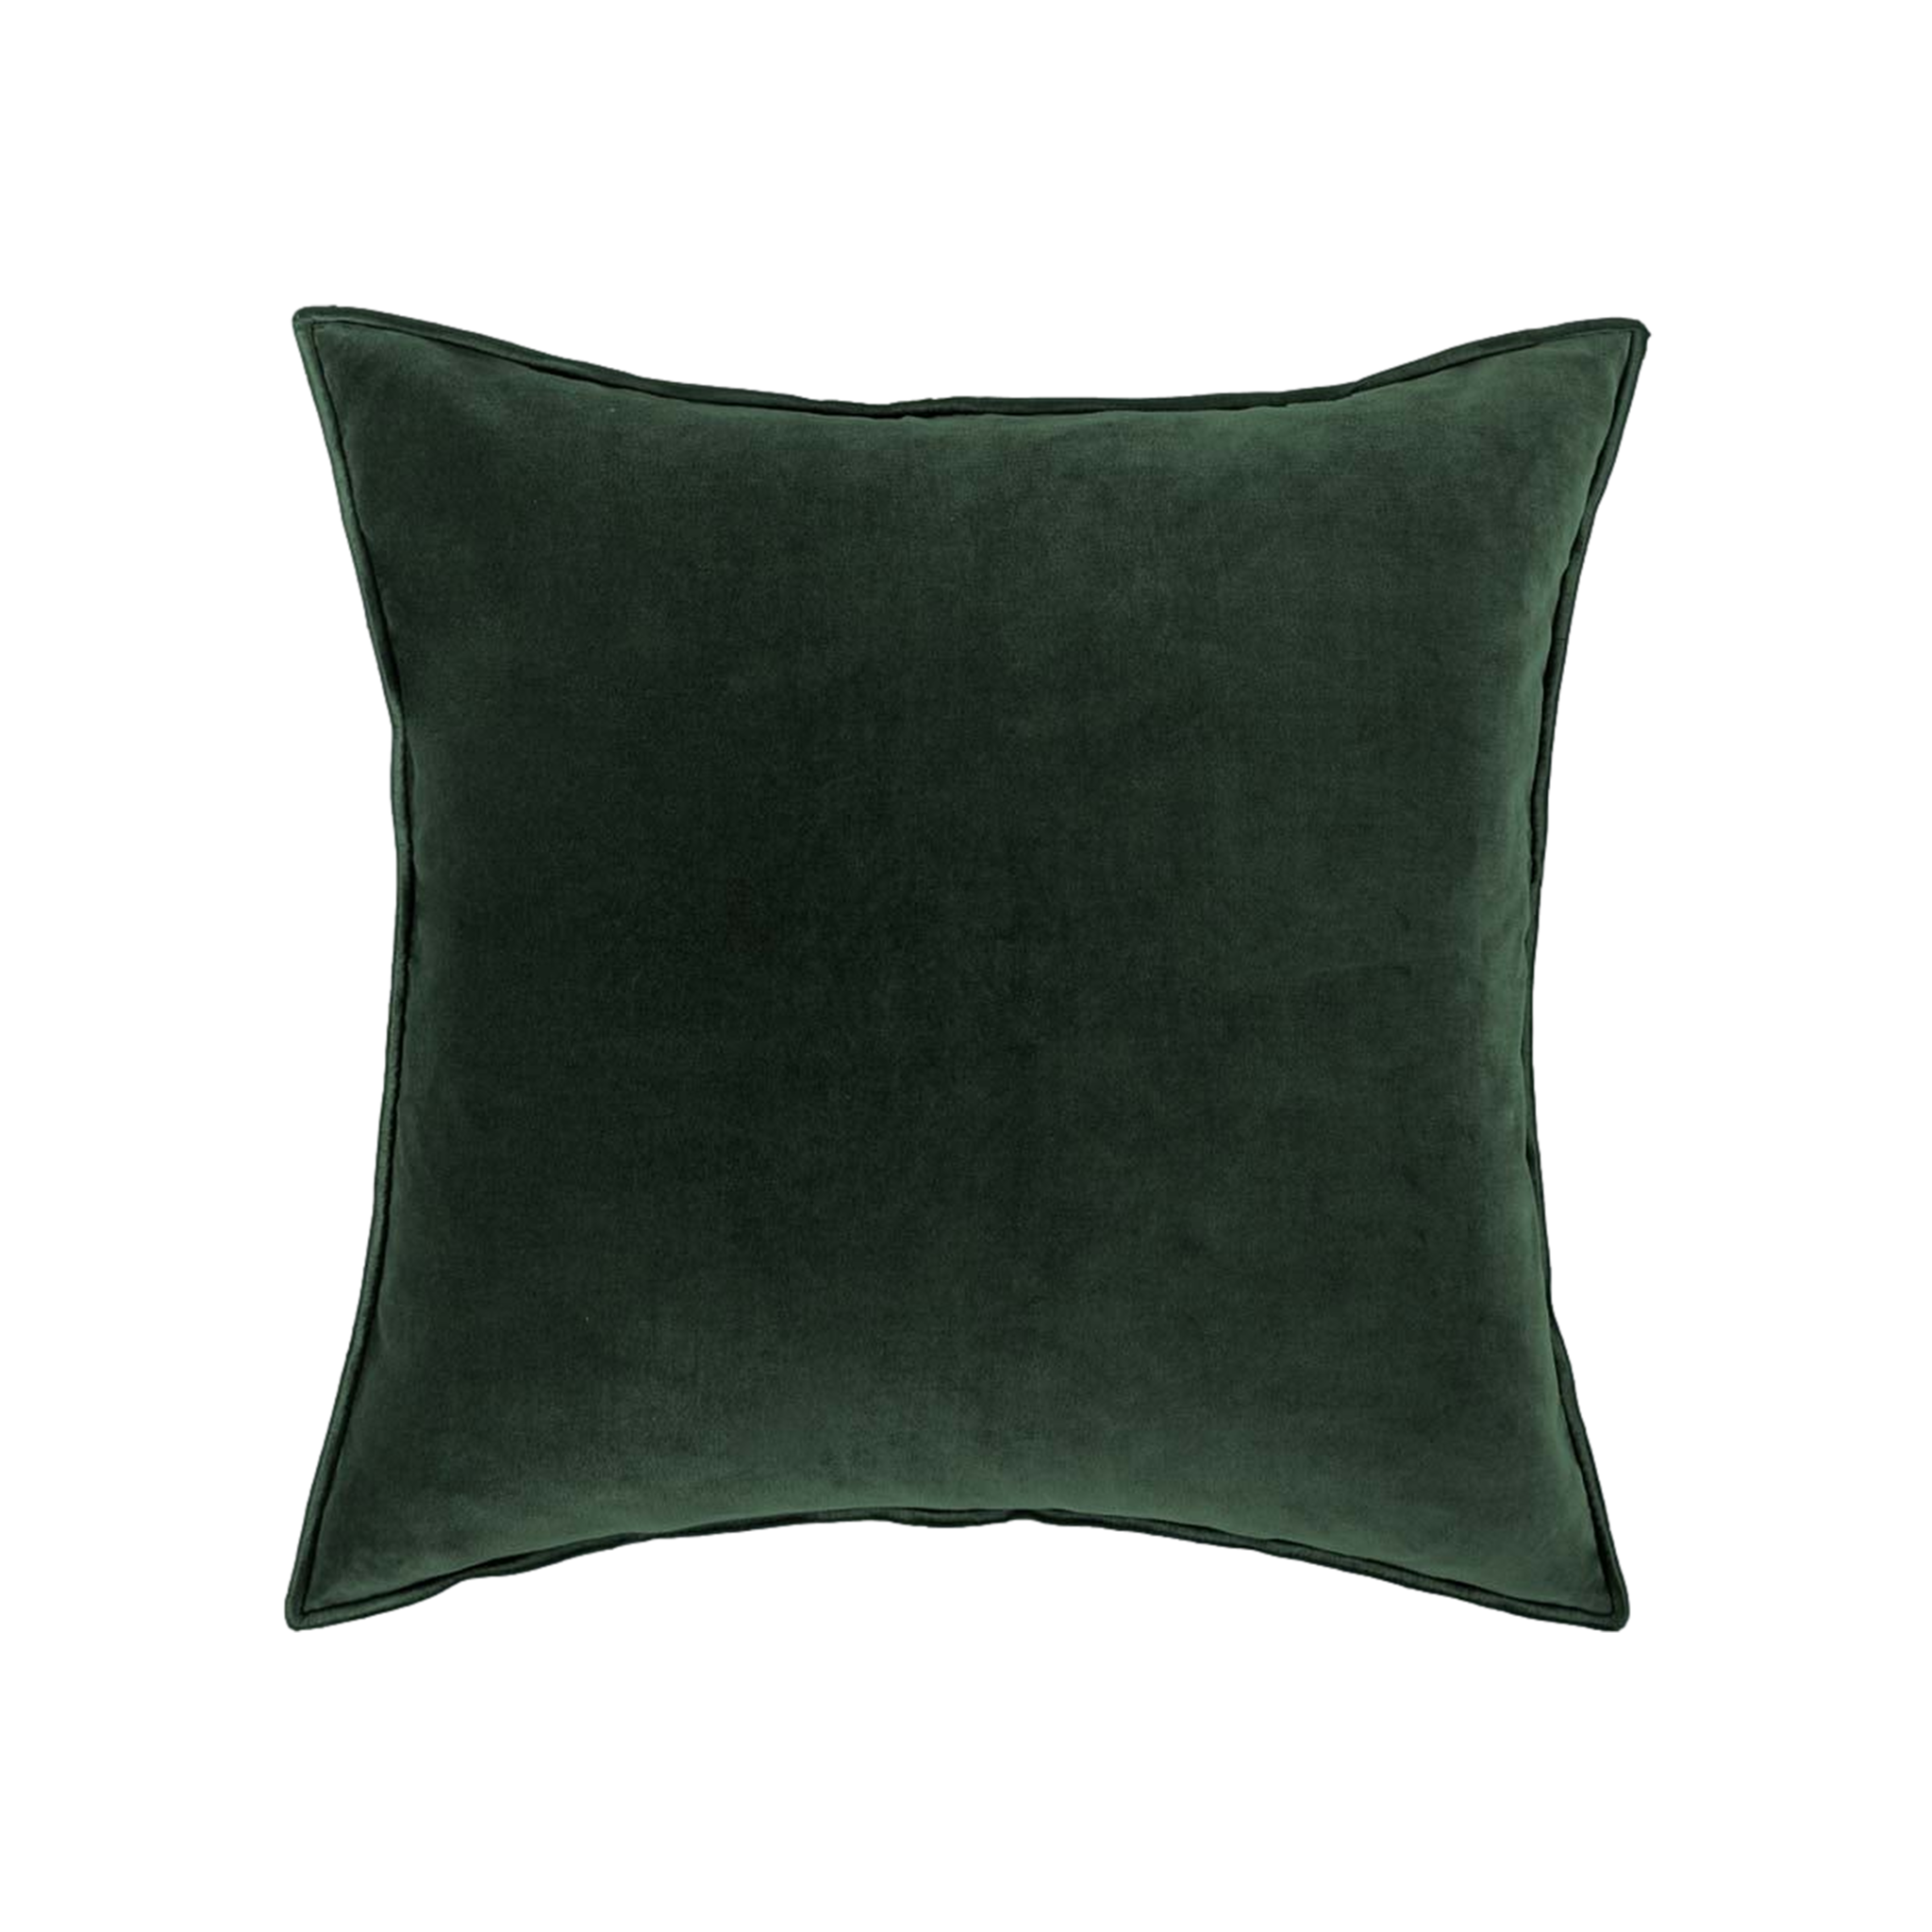 Sloane Pillow in Kale